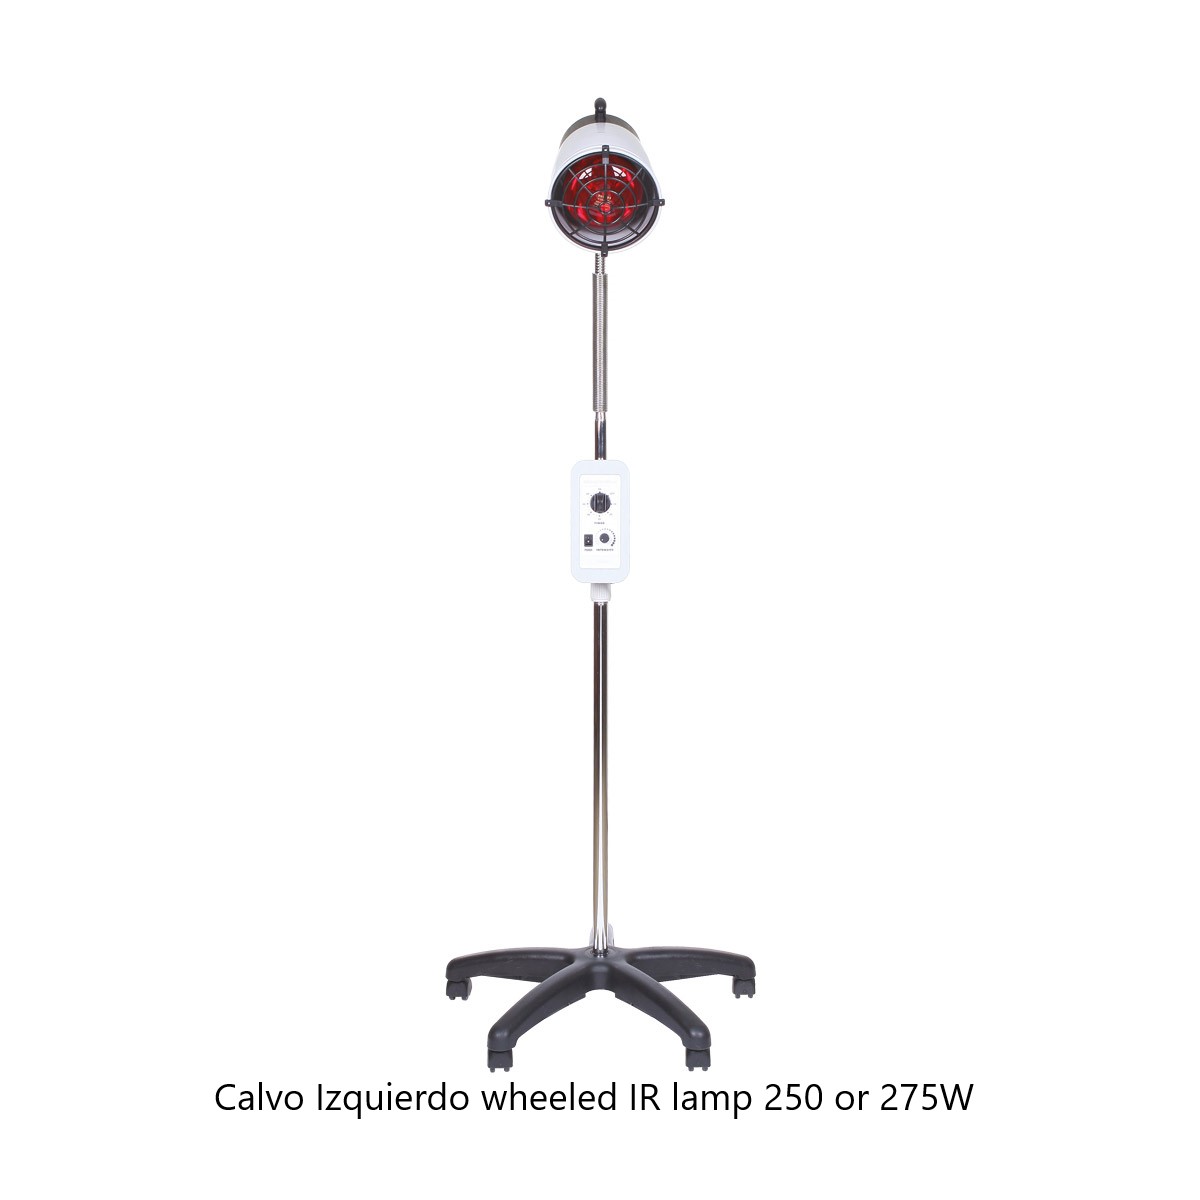 Calvo Izquierdo wheeled IR lamp 250 or 275W